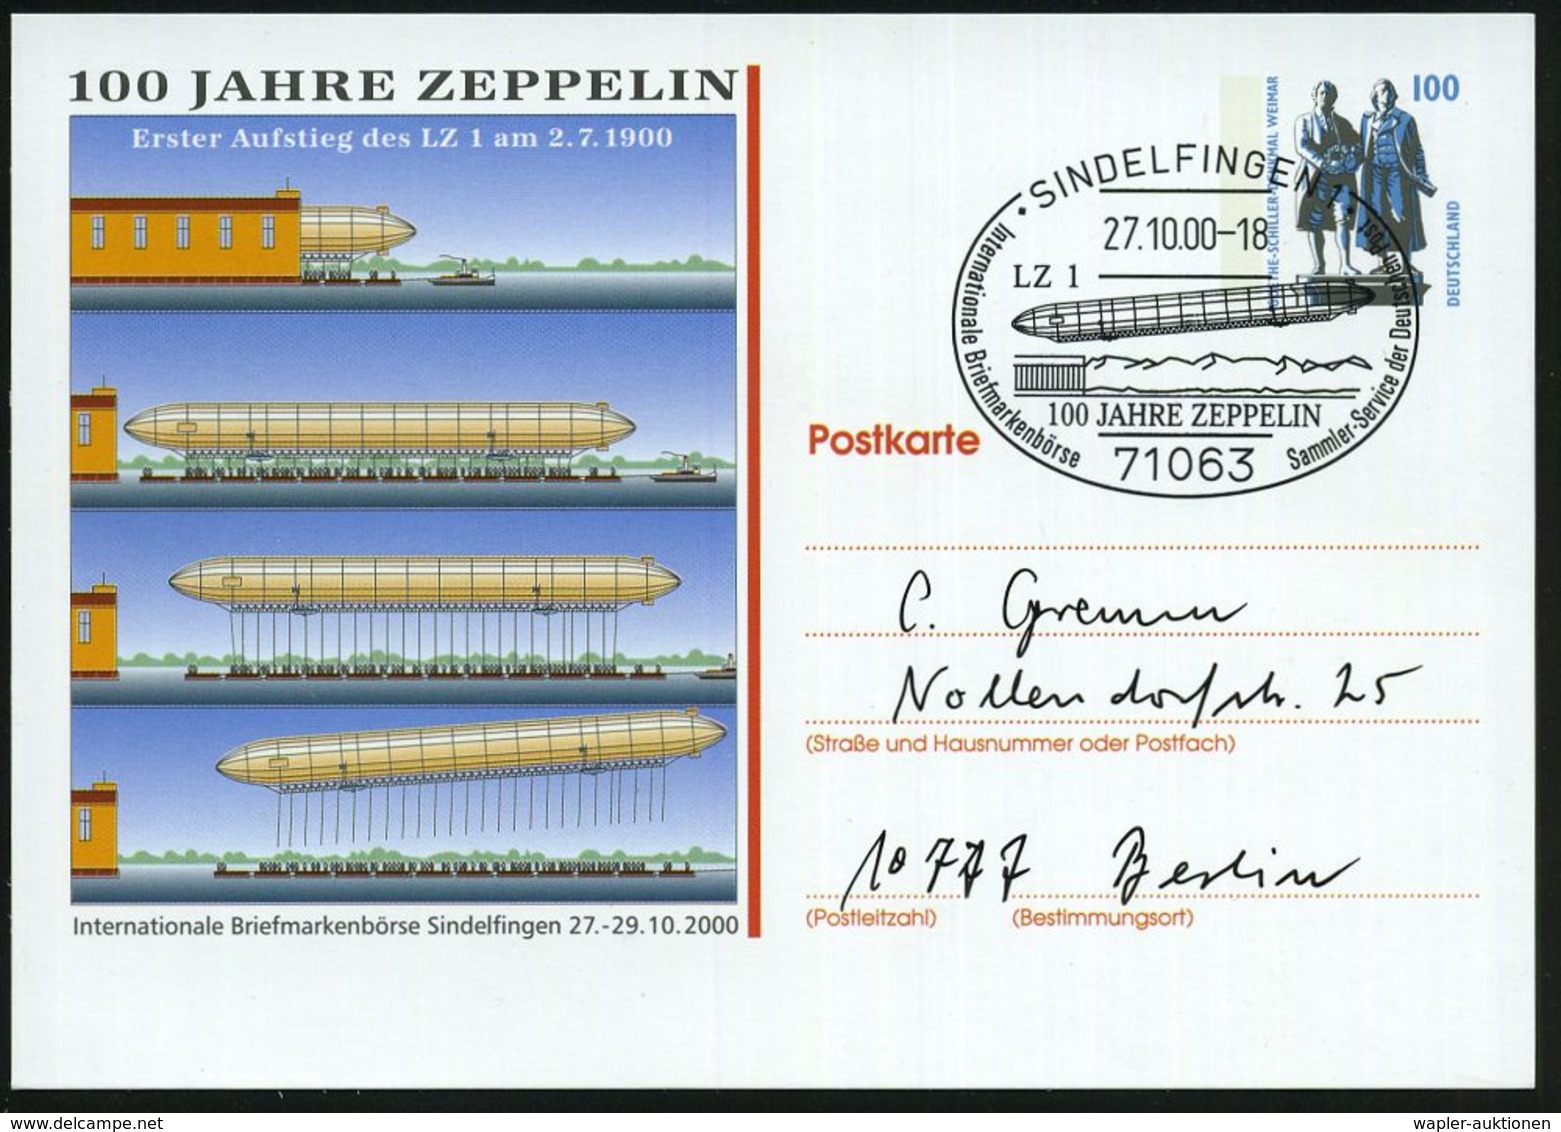 ZEPPELIN-MEMORABILA / ERINNERUNGSBELEGE : 71063 SINDELFINGEN 1/ 100 JAHRE ZEPPELIN.. 2000 (27.10.) SSt = Zeppelin LZ 1 A - Zeppelin